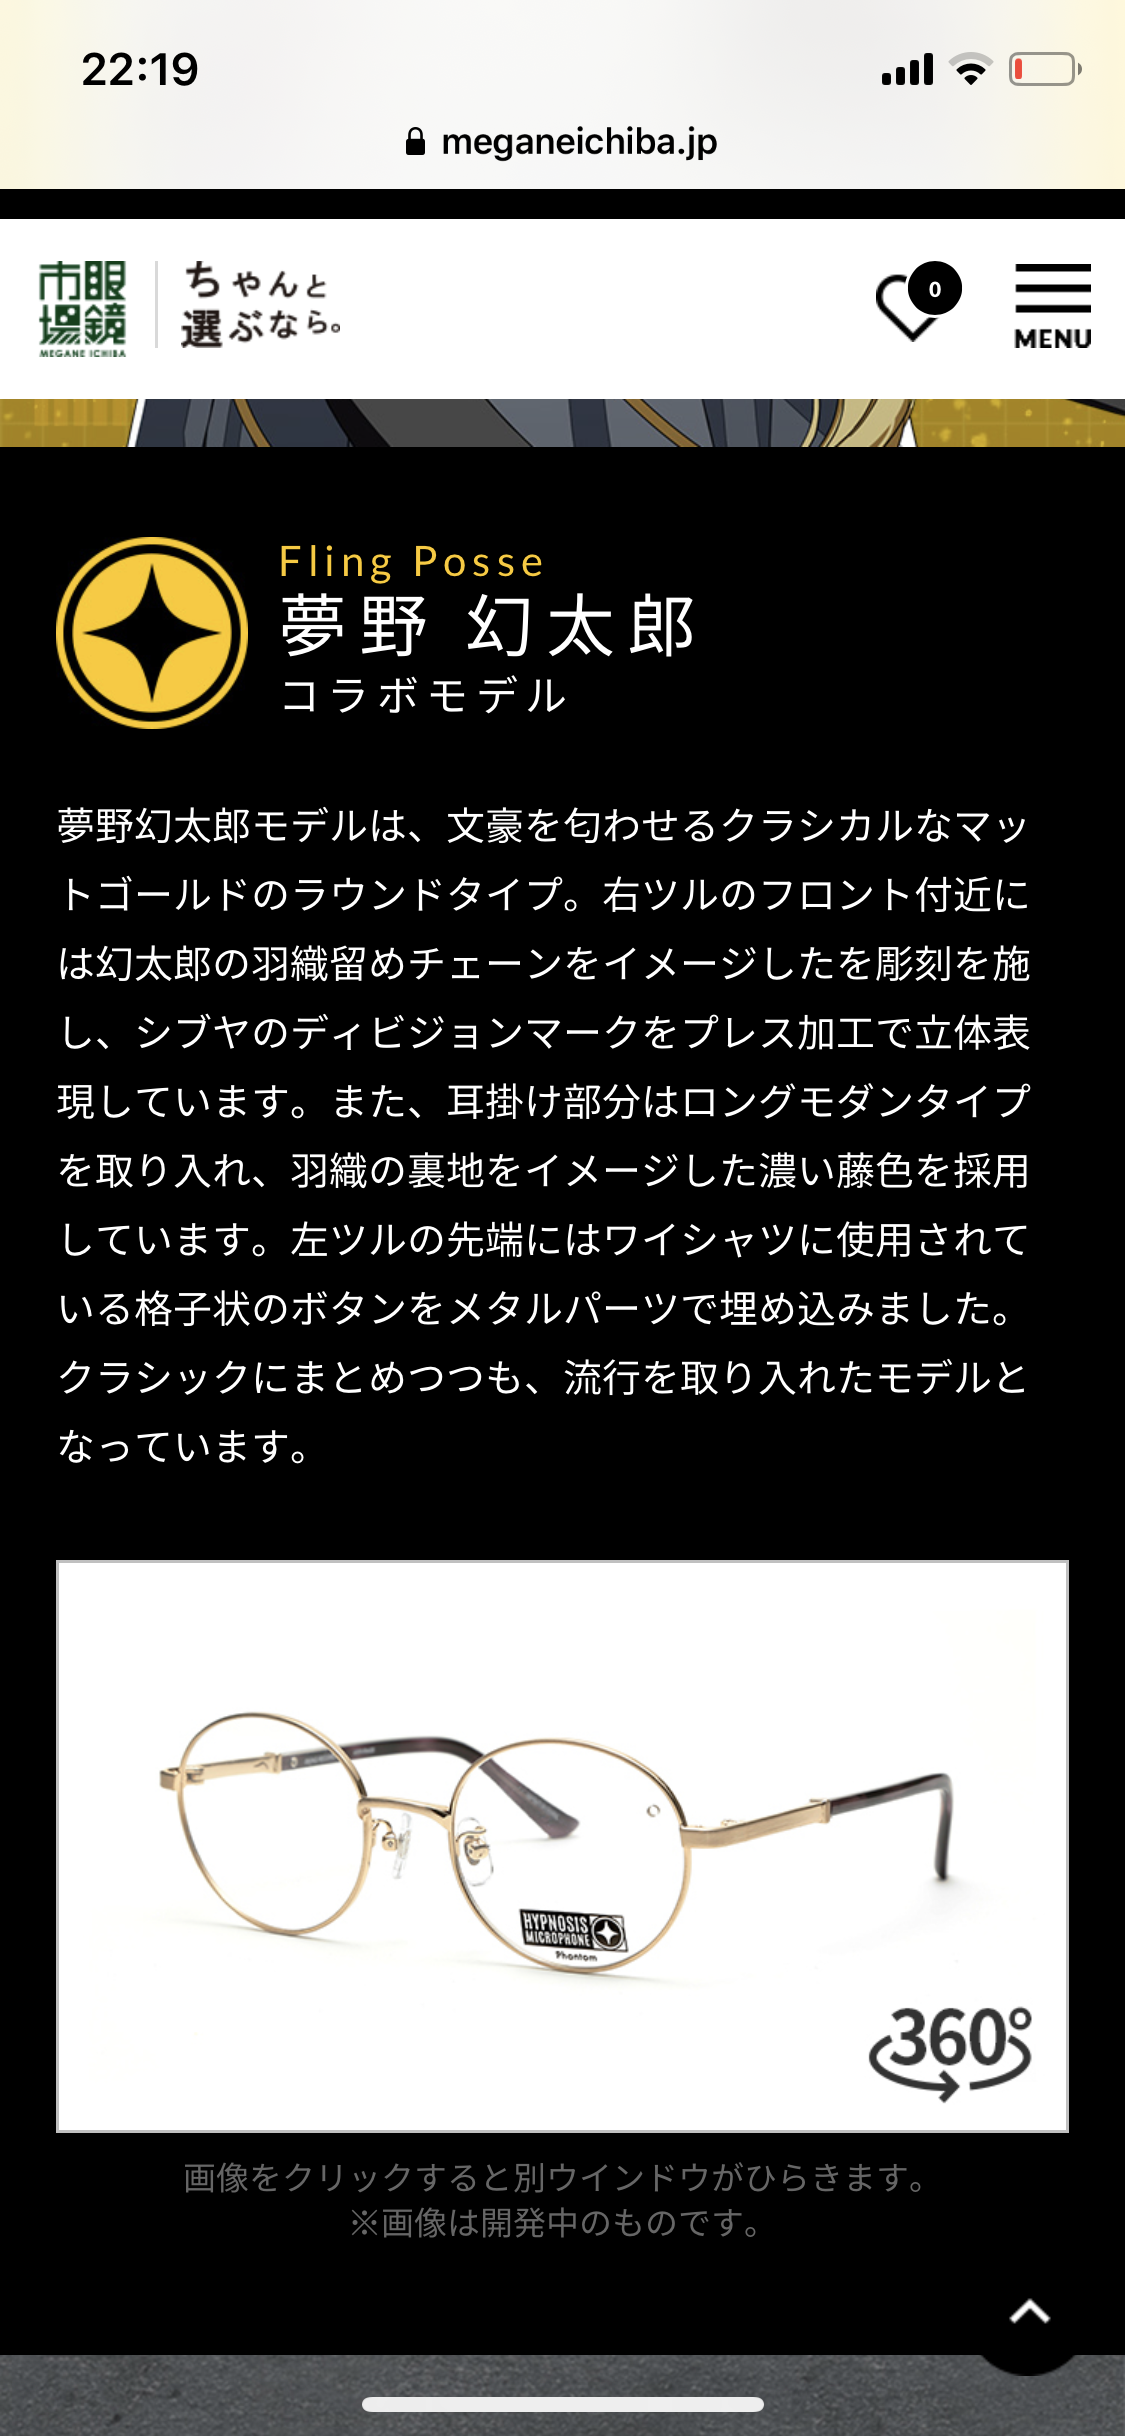 ヒプノシスマイク 眼鏡市場コラボ第2弾のビジュアル公開 眼鏡のデザインも判明 ヒプマイまとめディビジョン ヒプノシスマイク